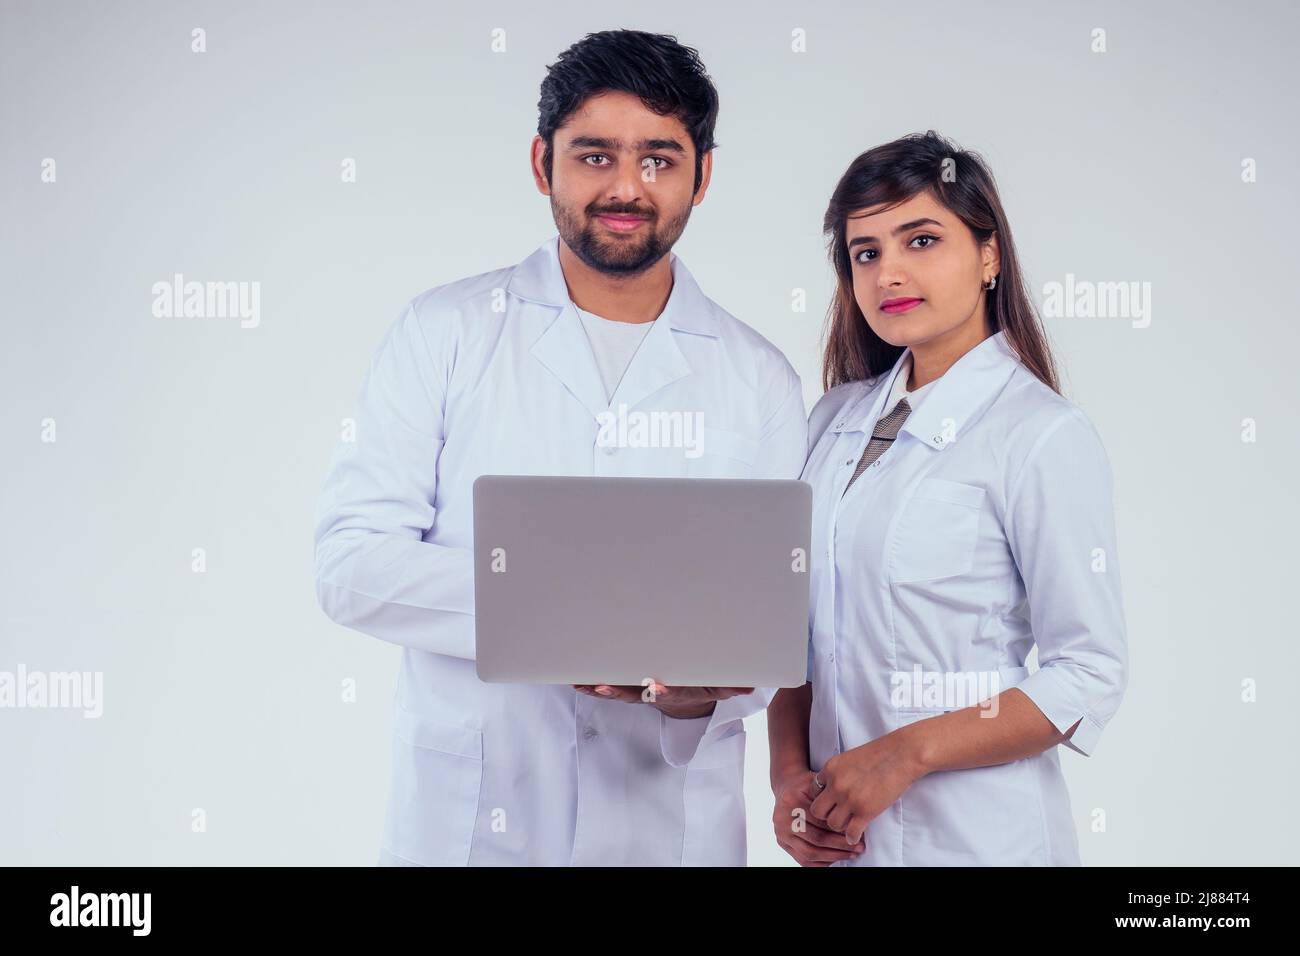 belle femme indienne et beau dinde homme portant un blazer blanc portant un ordinateur portable et regardant l'appareil photo en arrière-plan studio Banque D'Images